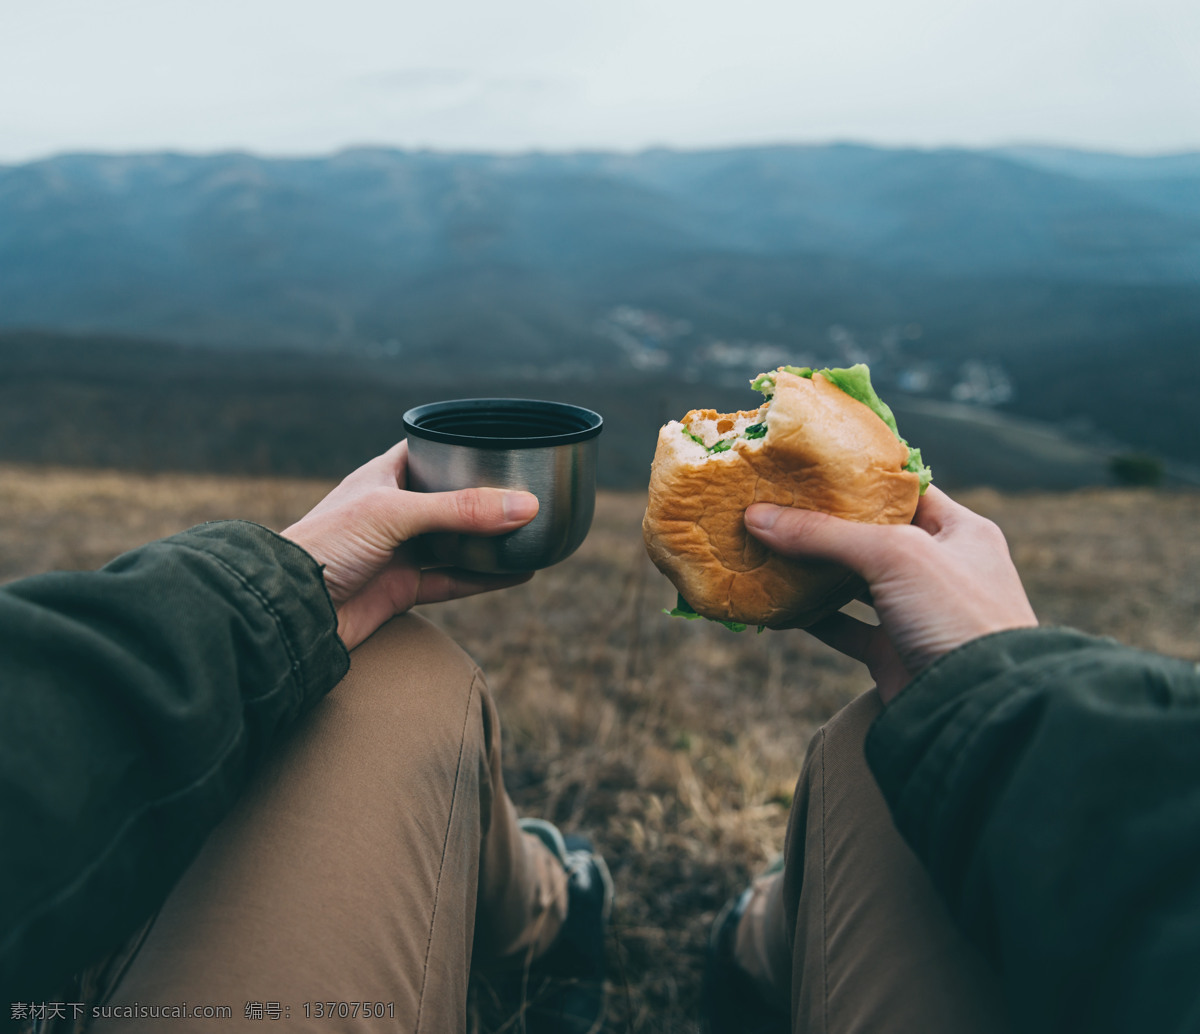 吃 汉堡包 男士 旅游 旅行 快餐 美食 食物 喝水 情侣图片 人物图片